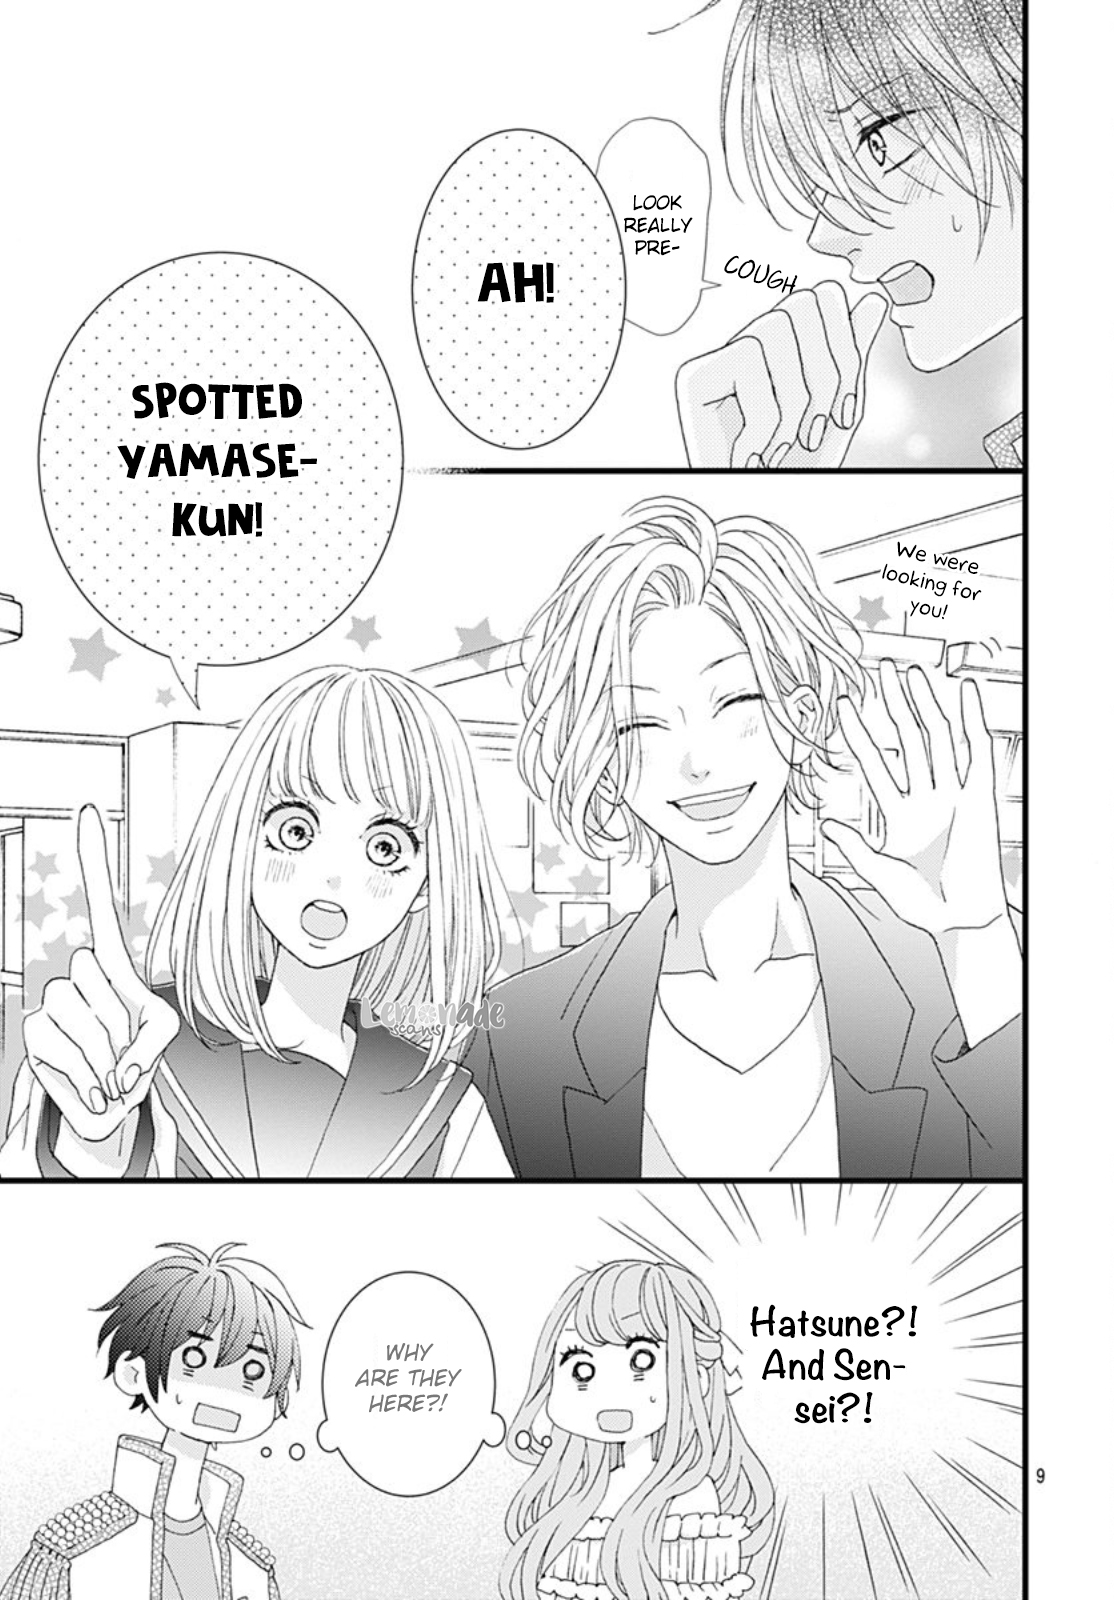 Yamase wa Doko e Itta? Vol. 2 Ch. 8